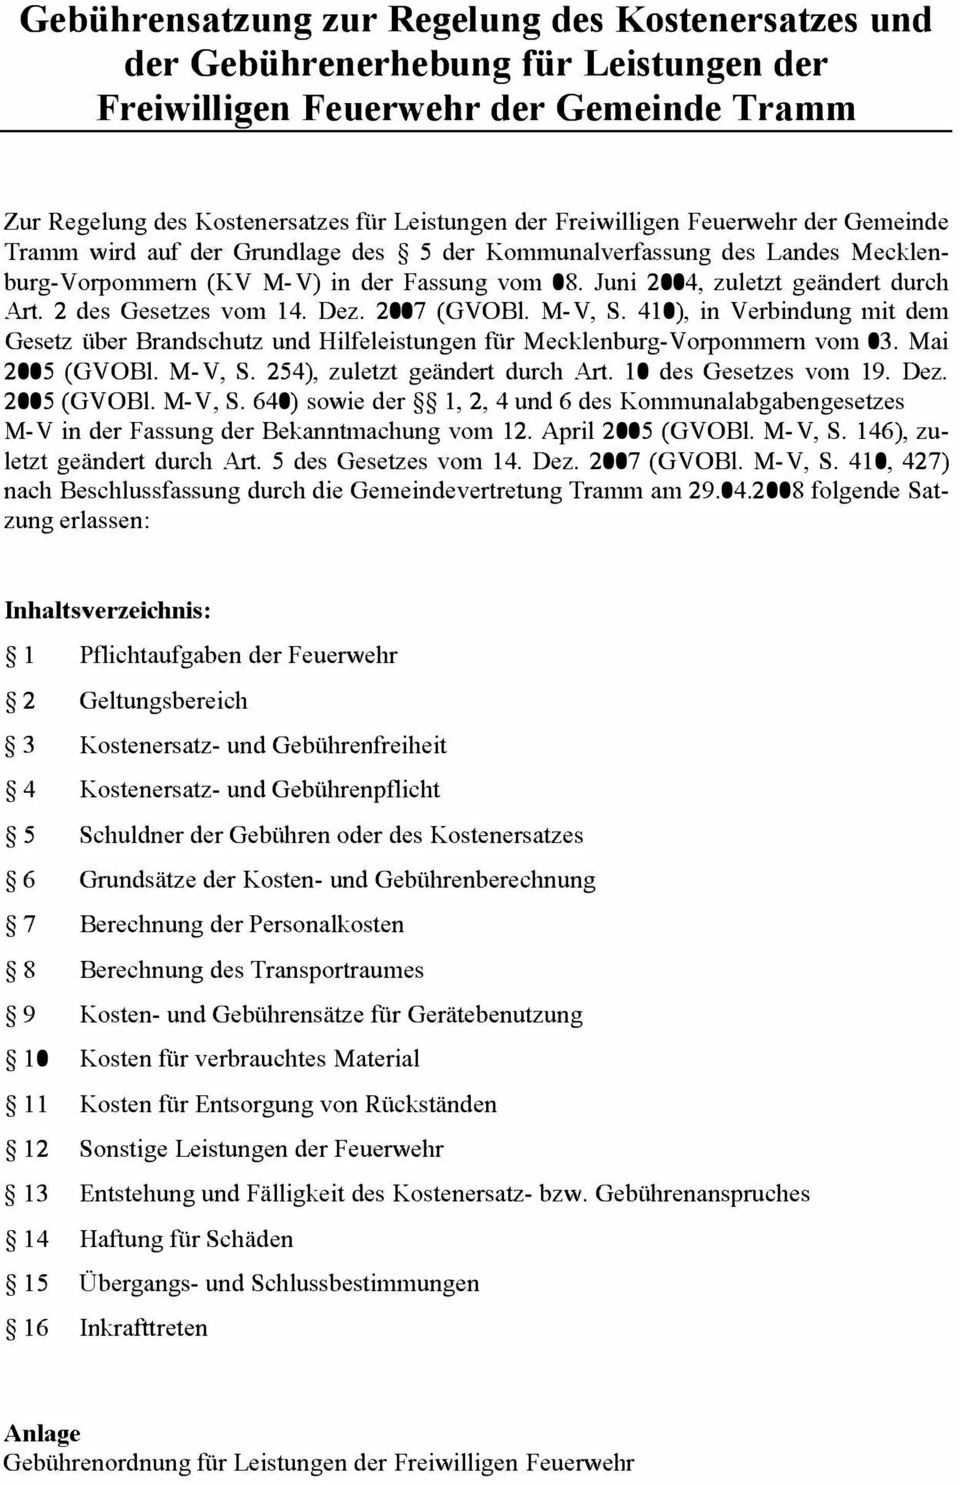 2 des Gesetzes vom 14. Dez. 2007 (GVOBl. M-V, S. 410), in Verbindung mit dem Gesetz über Brandschutz und Hilfeleistungen für Mecklenburg-Vorpommern vom 03. Mai 2005 (GVOBl. M-V, S. 254), zuletzt geändert durch Art.